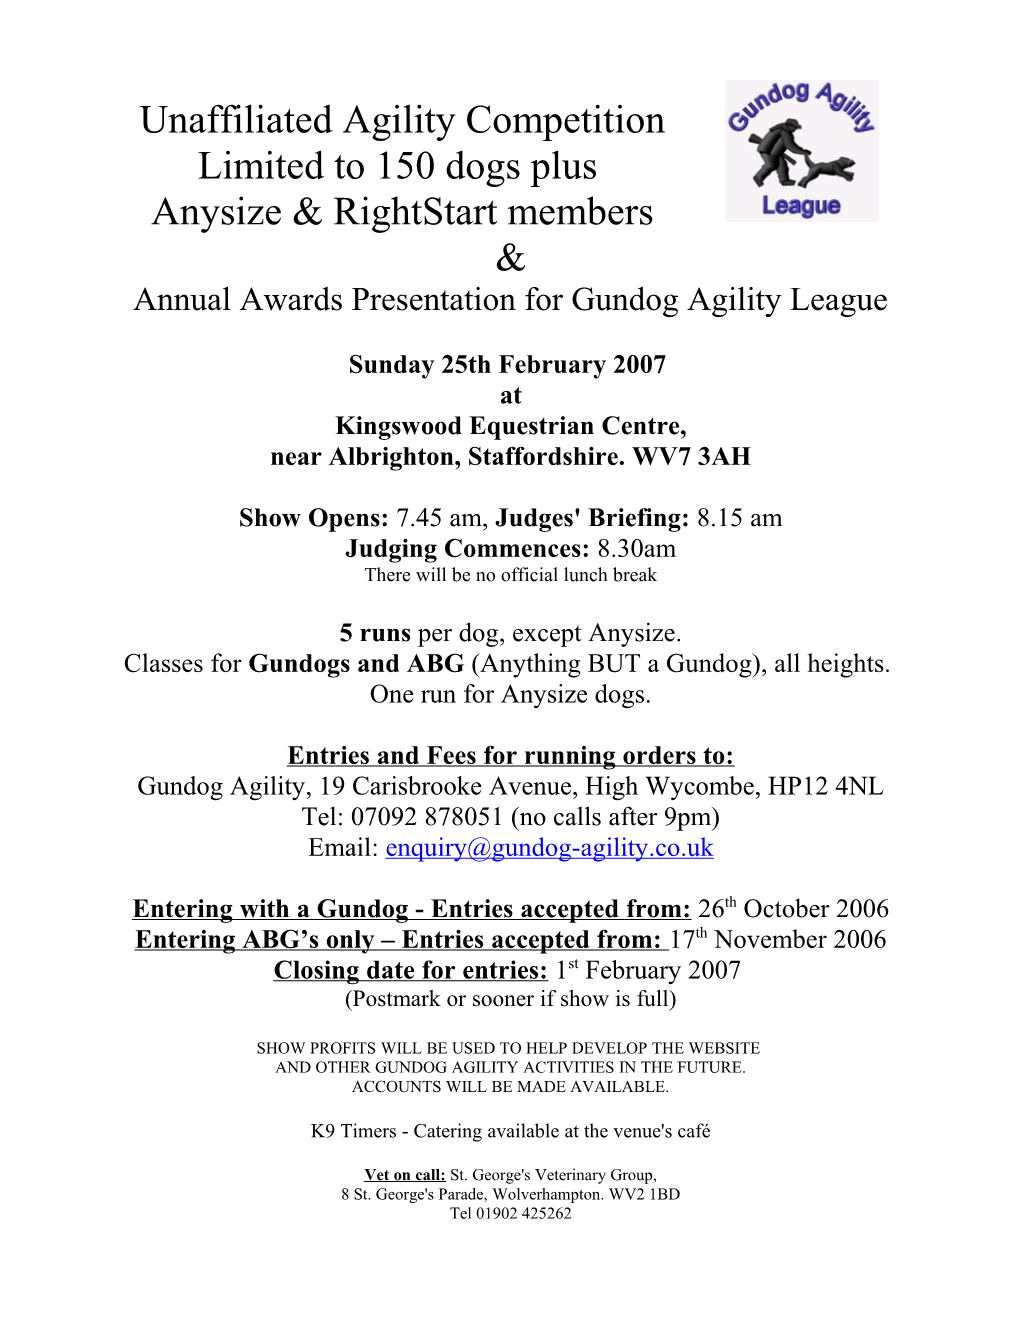 Annual Awards Presentation for Gundog Agility League